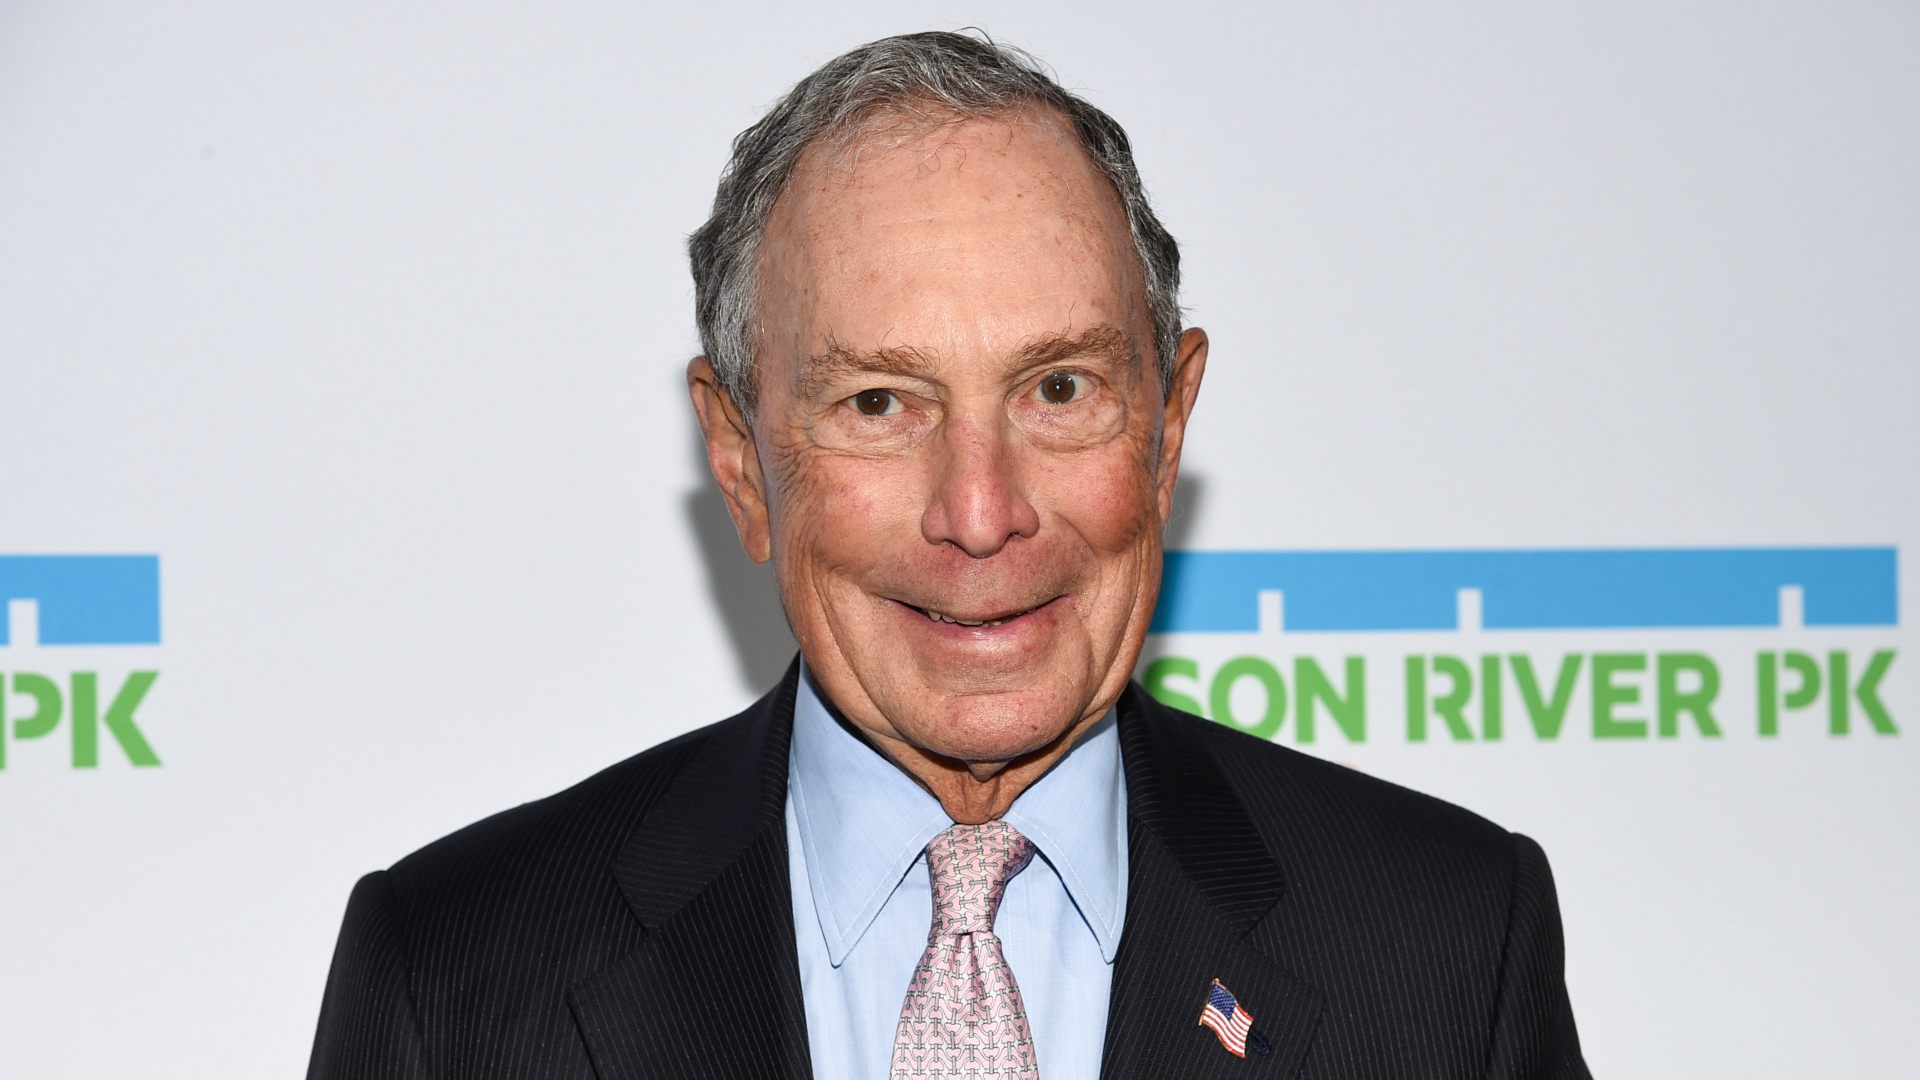 El exalcalde de Nueva York Michael Bloomberg quiere batir a Trump en las elecciones de 2020